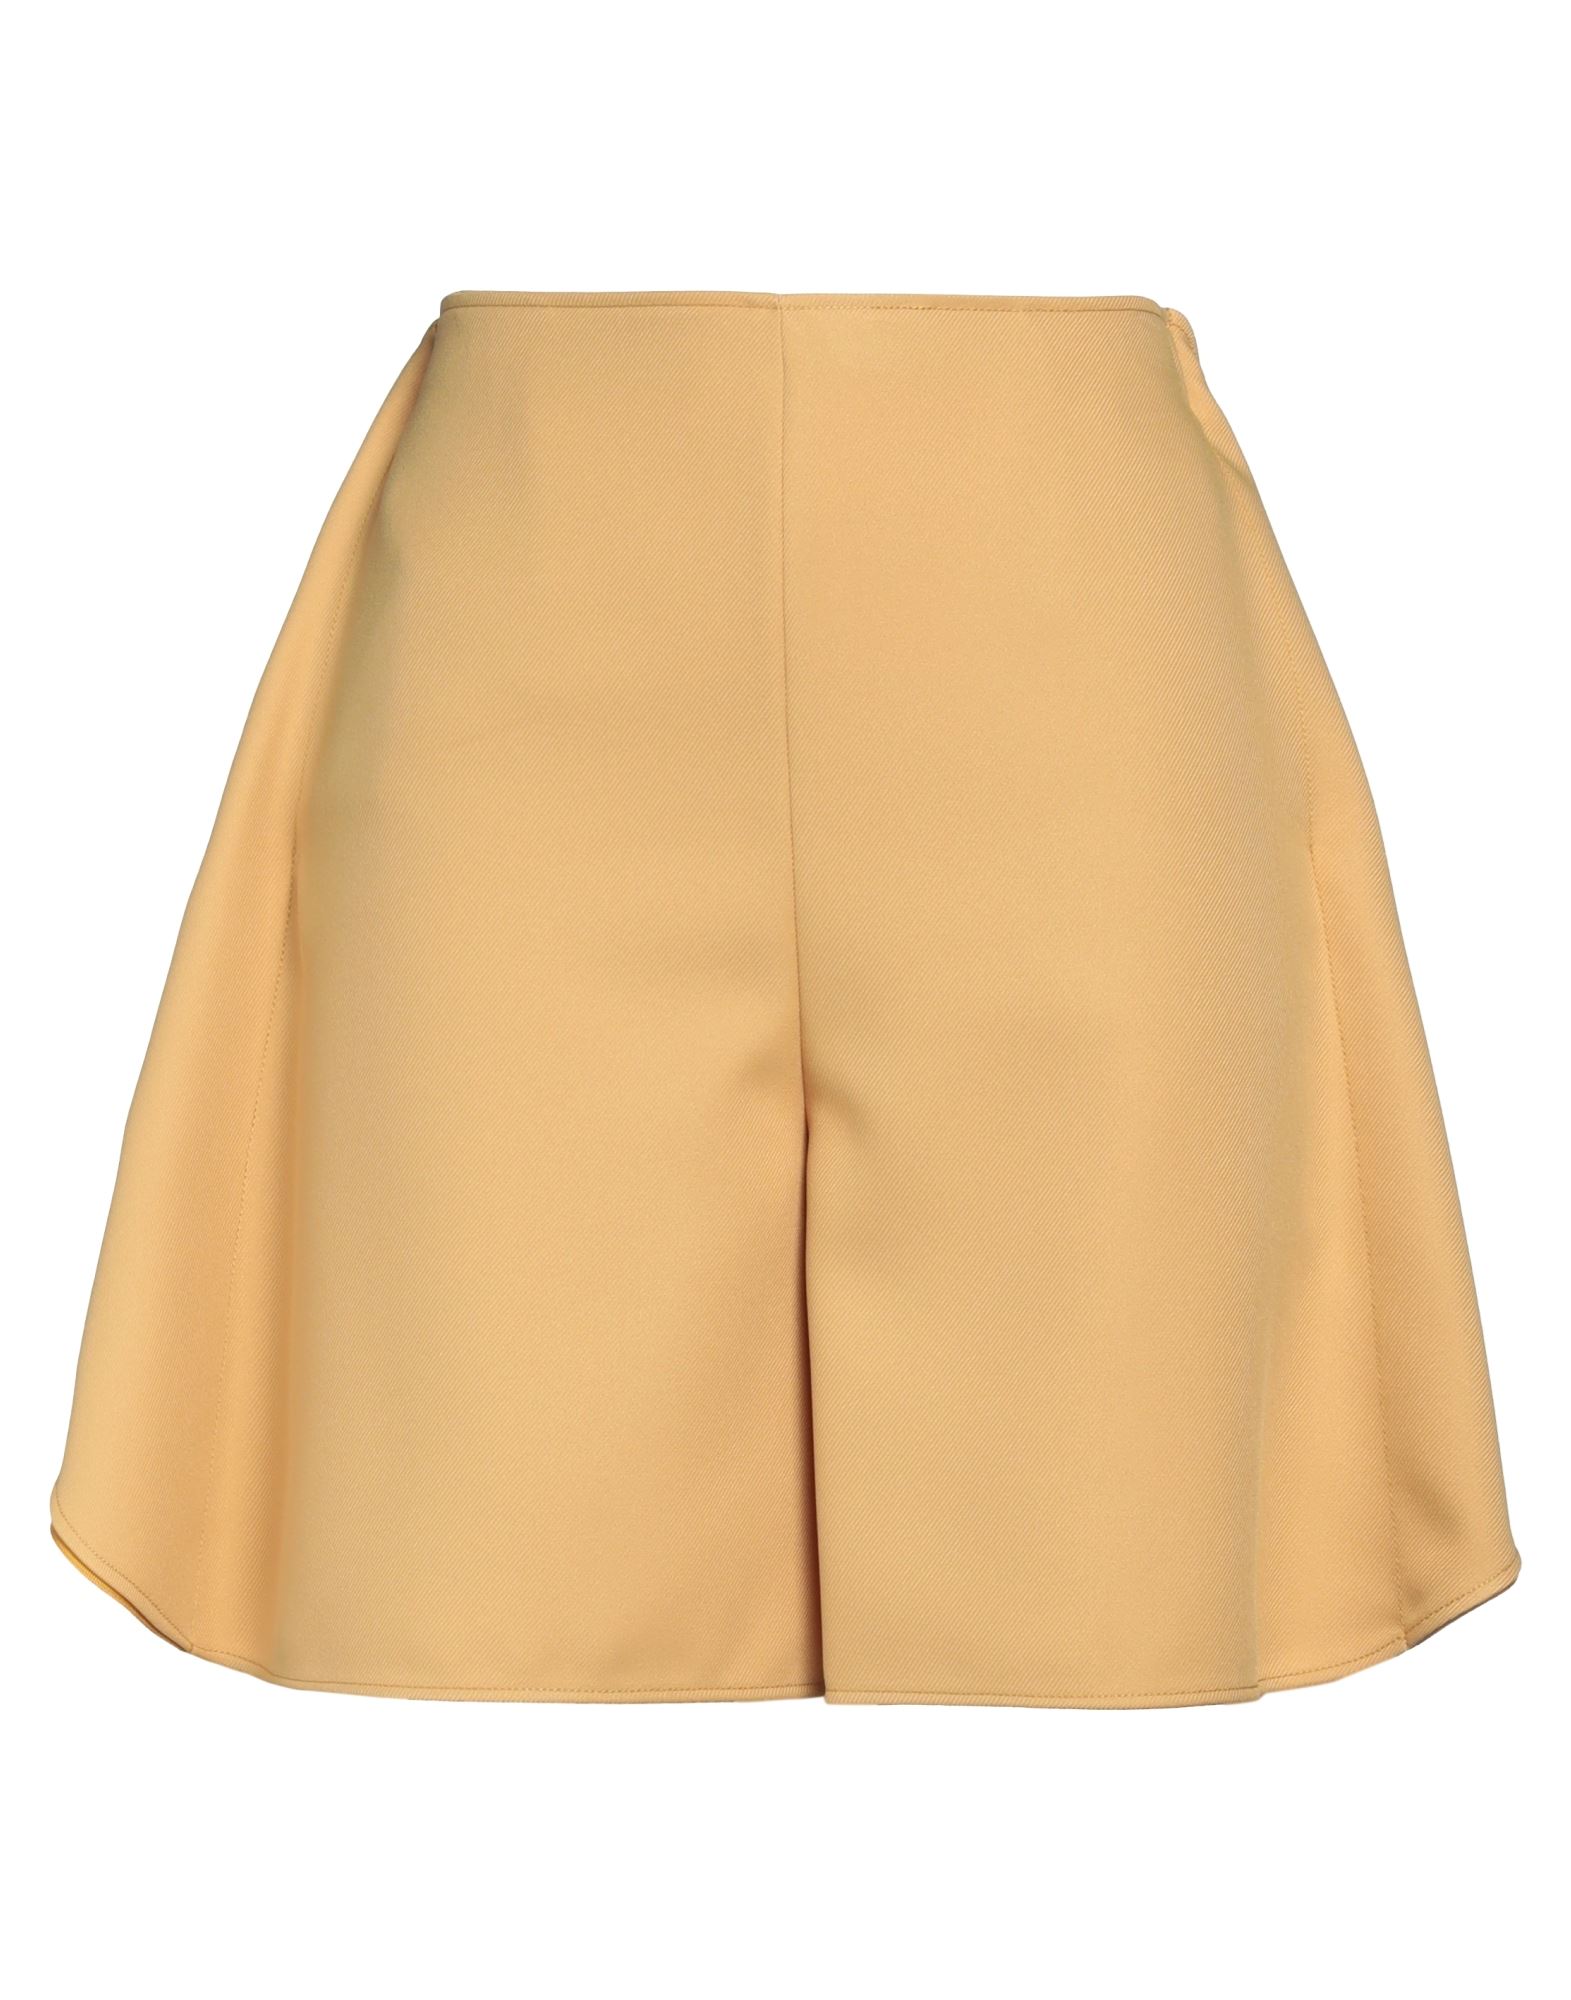 Stella Mccartney Woman Shorts & Bermuda Shorts Yellow Size 8-10 Polyester